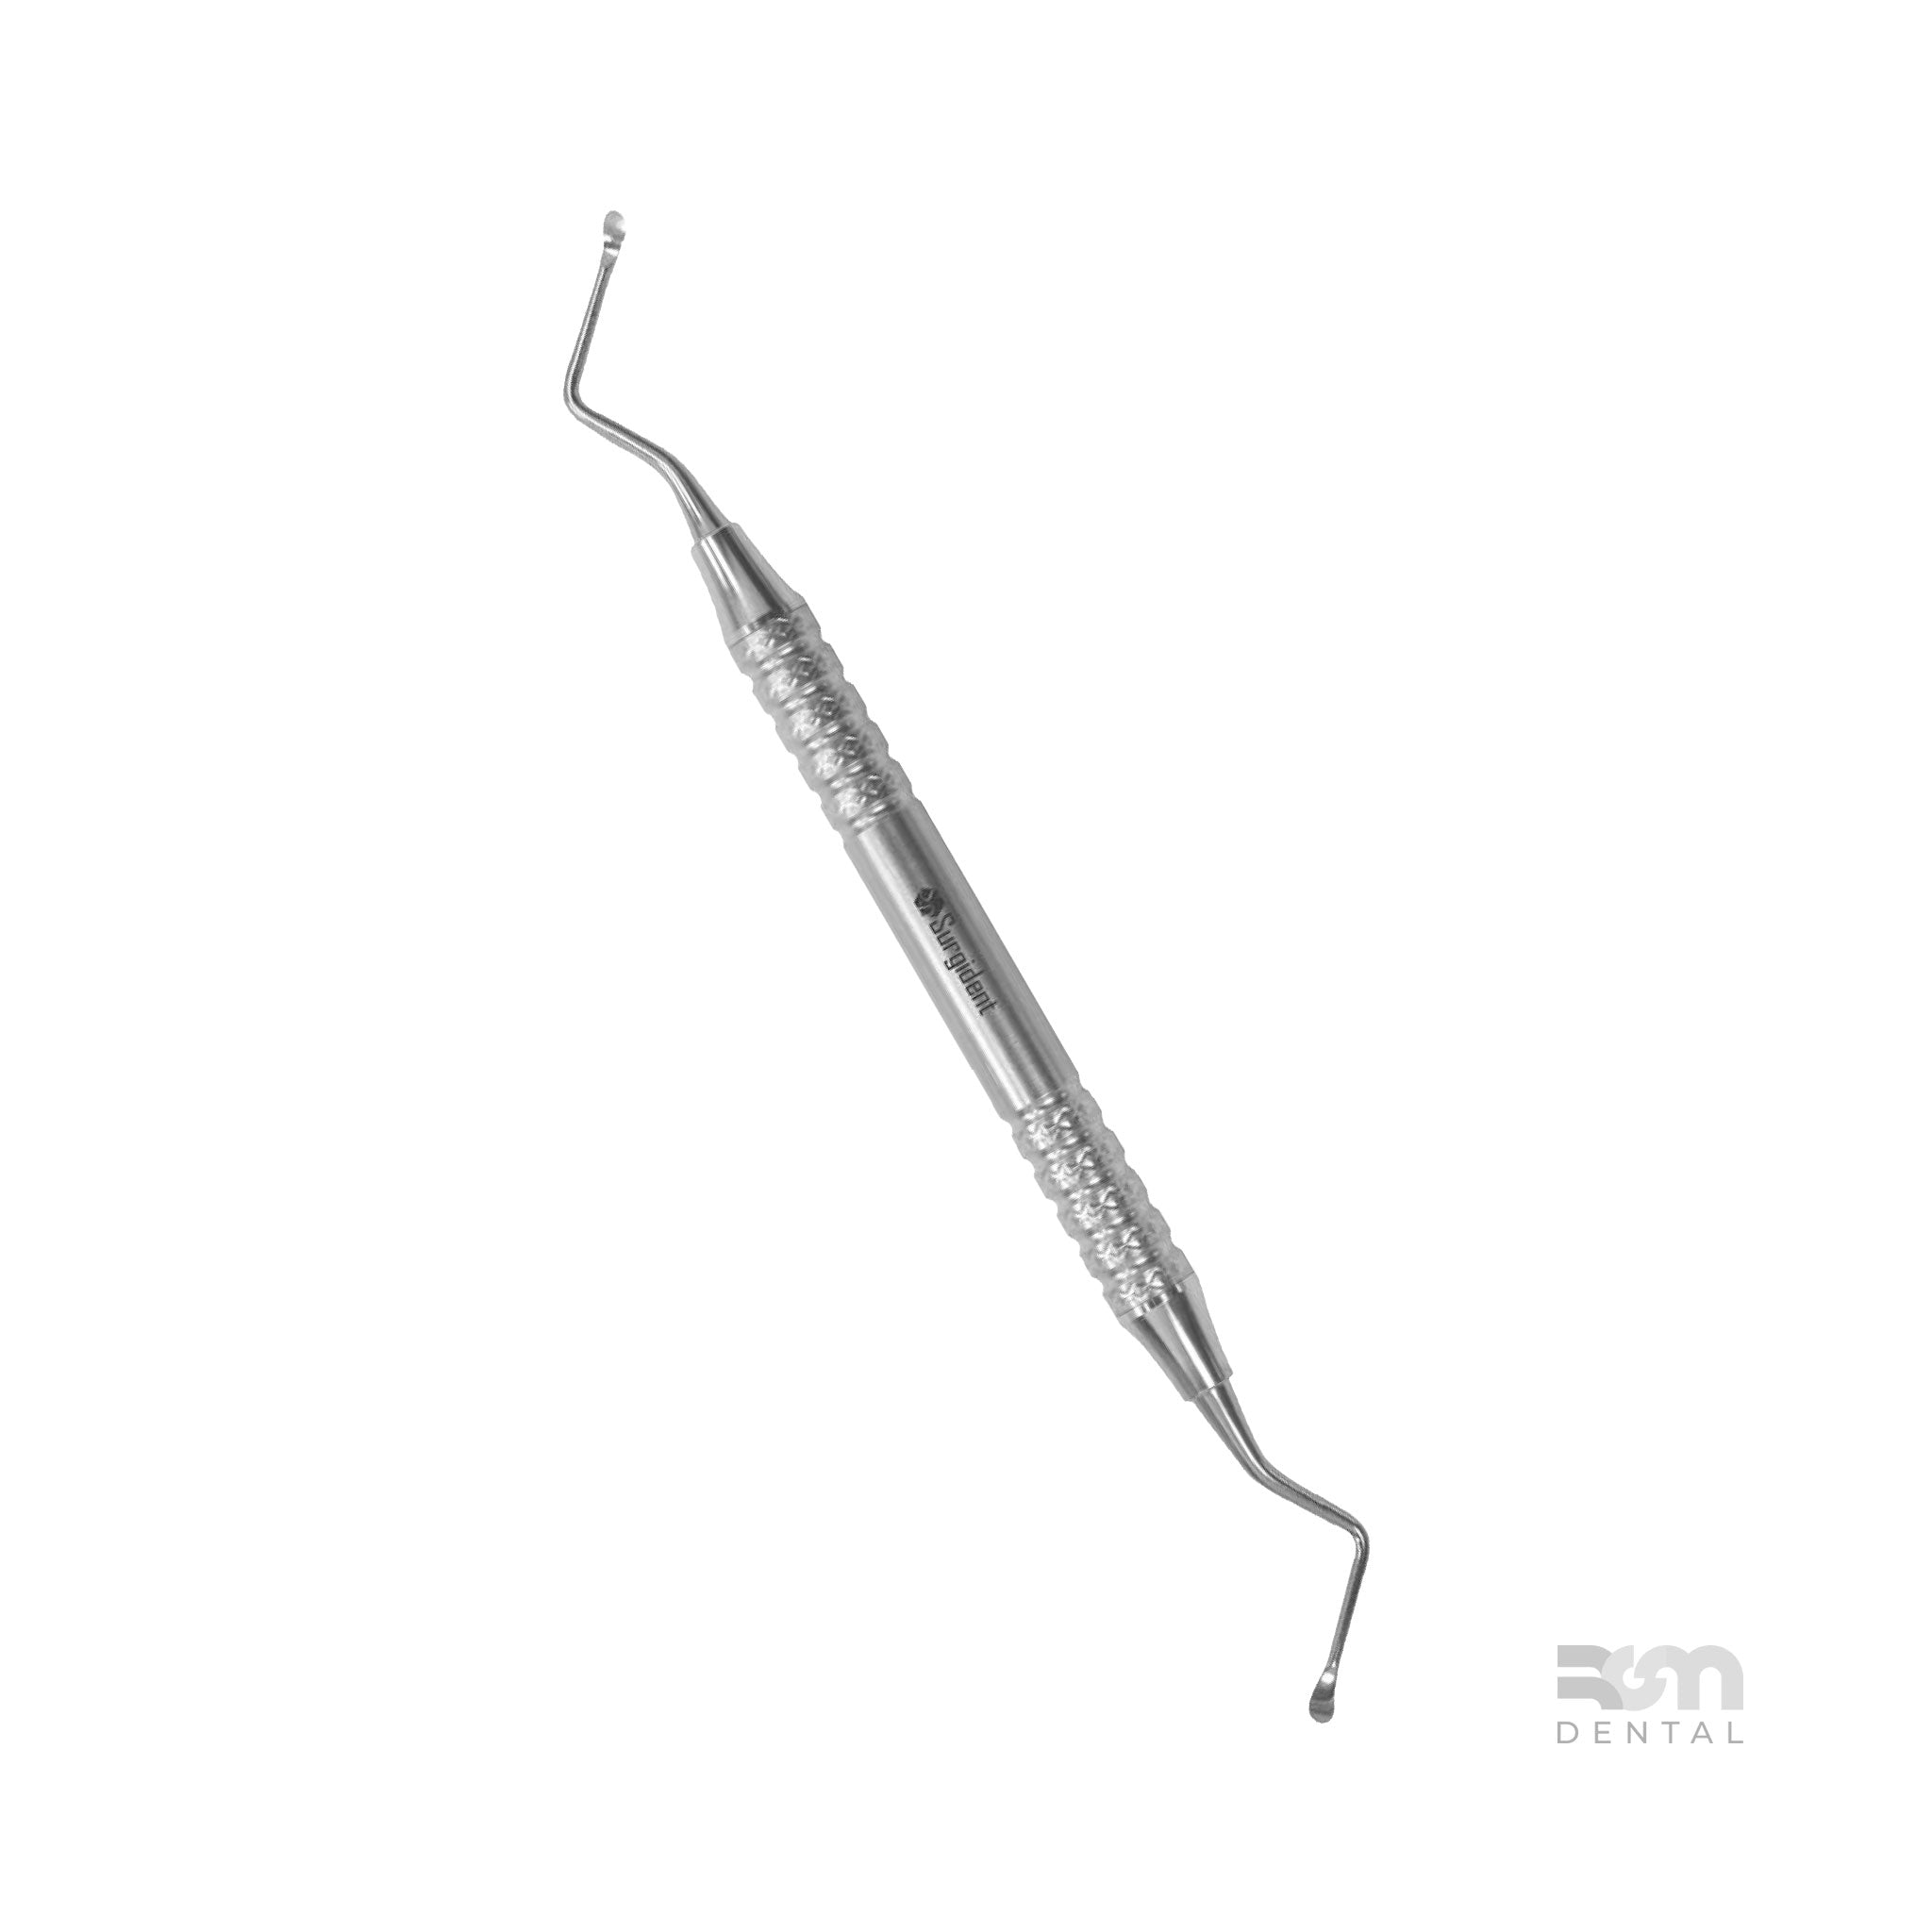 Surgical Curette CL84 : 2.0mm